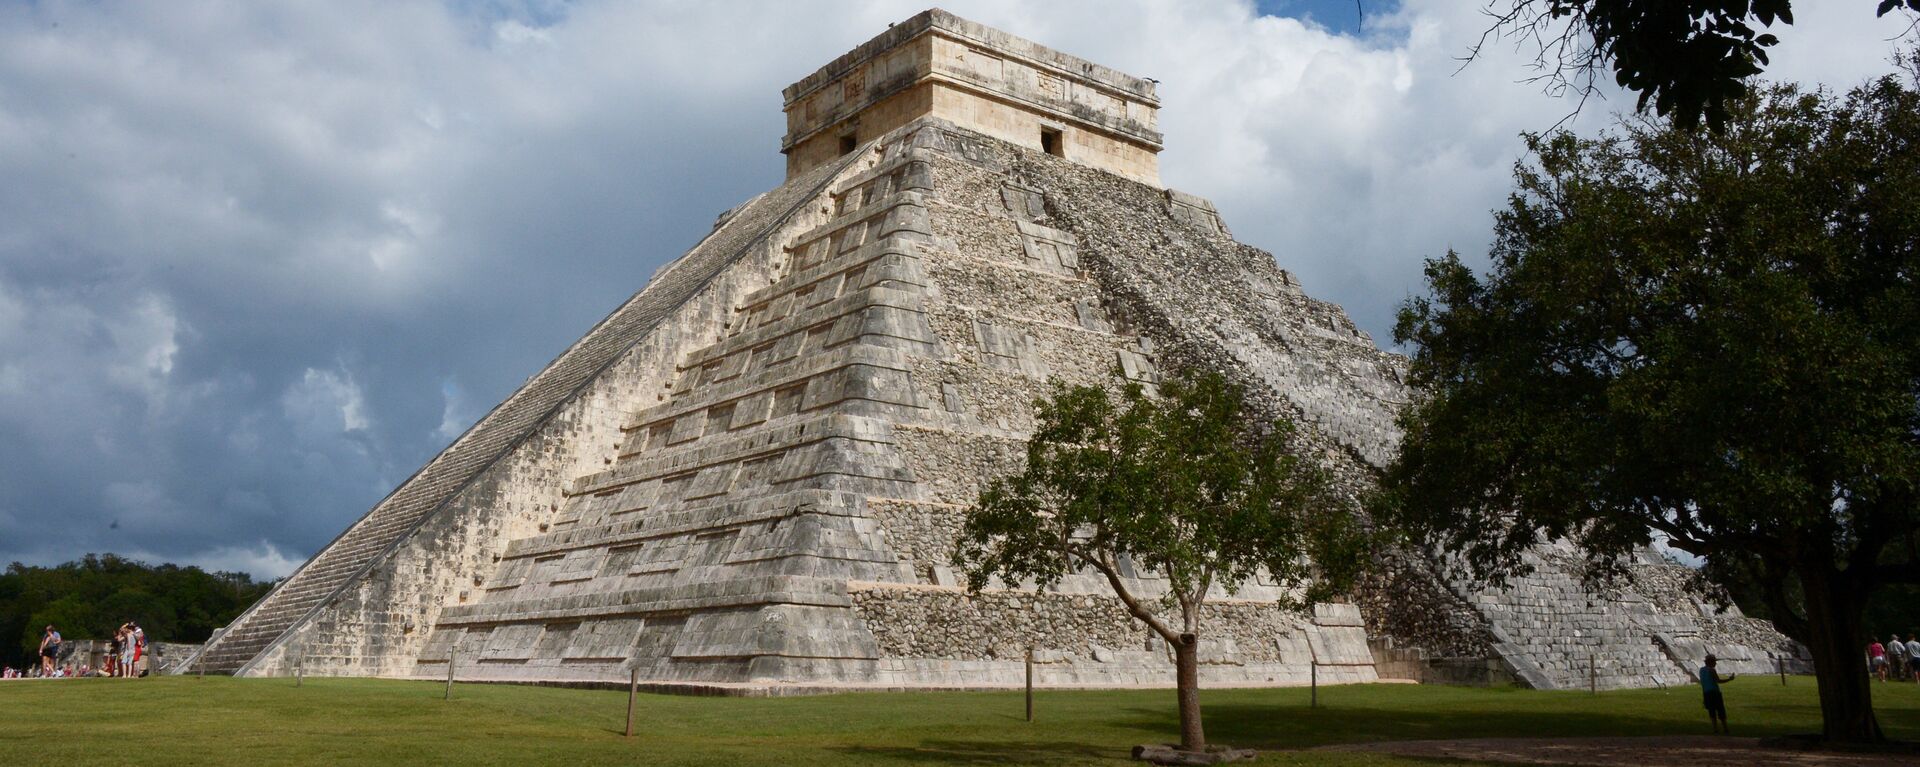 El sitio arqueológico de Chichen Itzá, en Yucatán, México - Sputnik Mundo, 1920, 20.03.2019